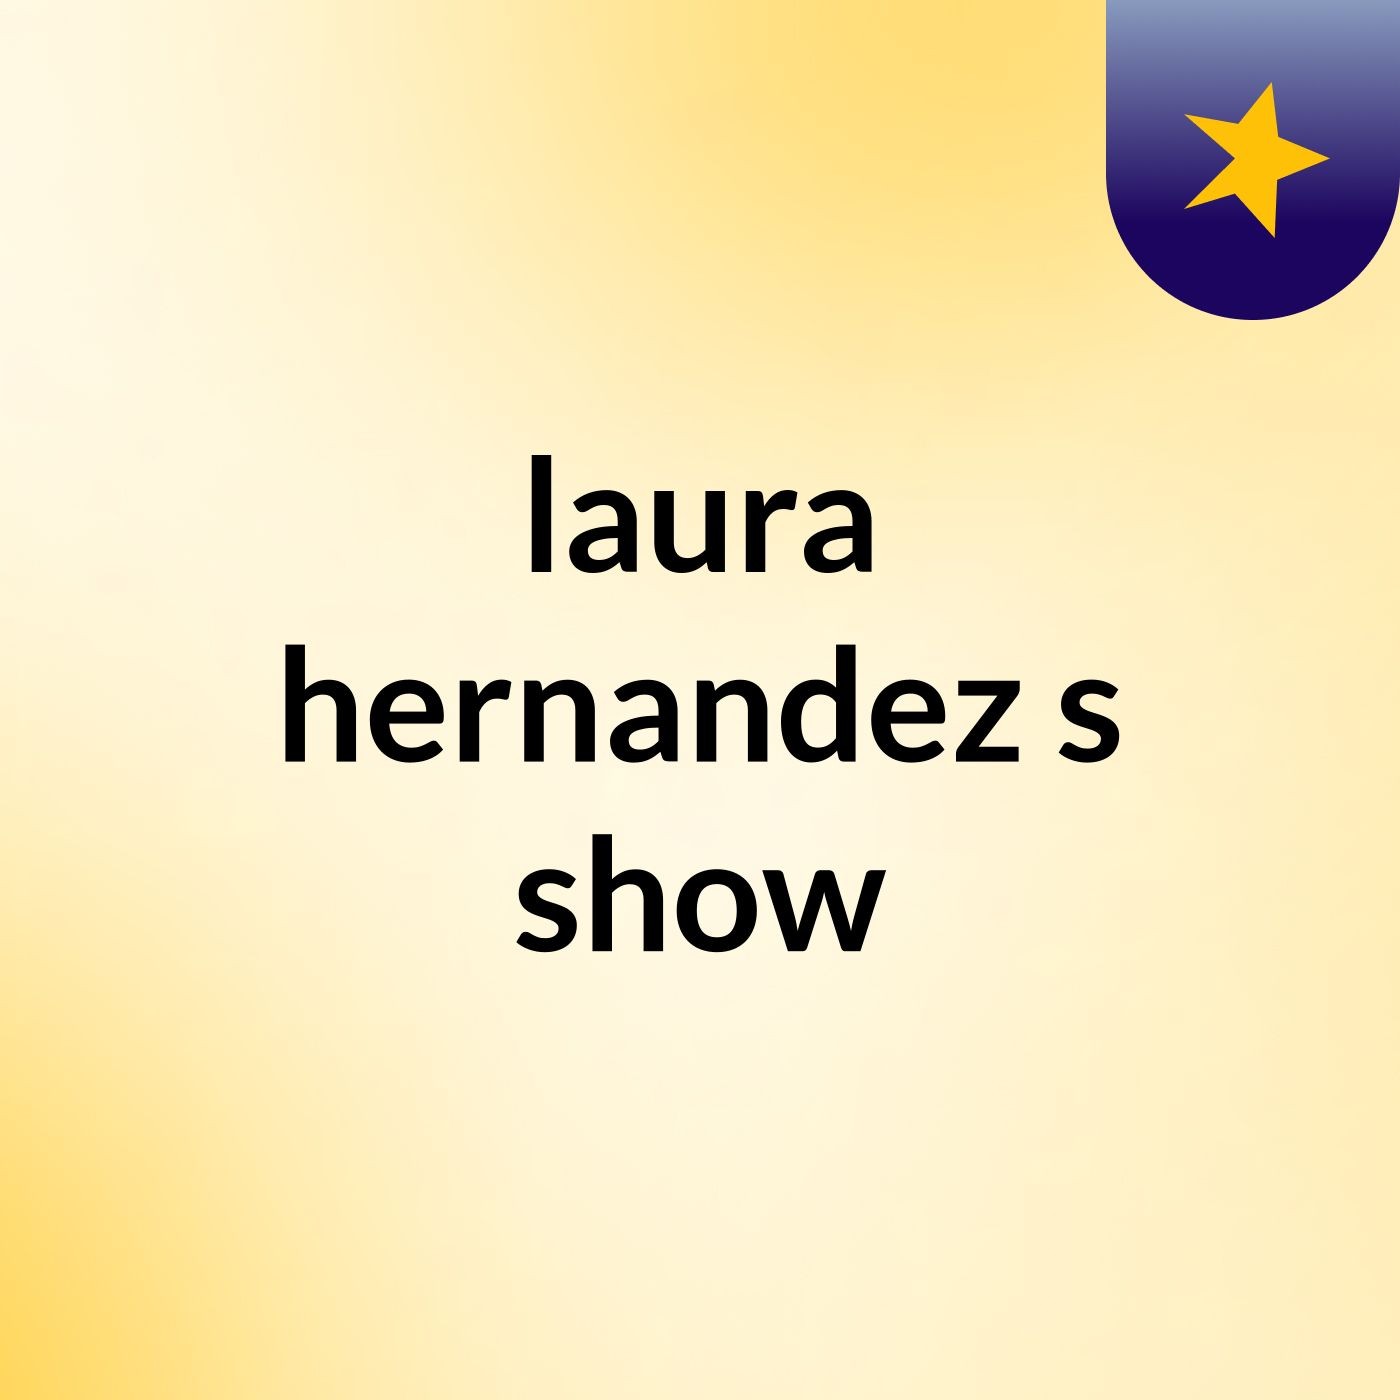 laura hernandez's show